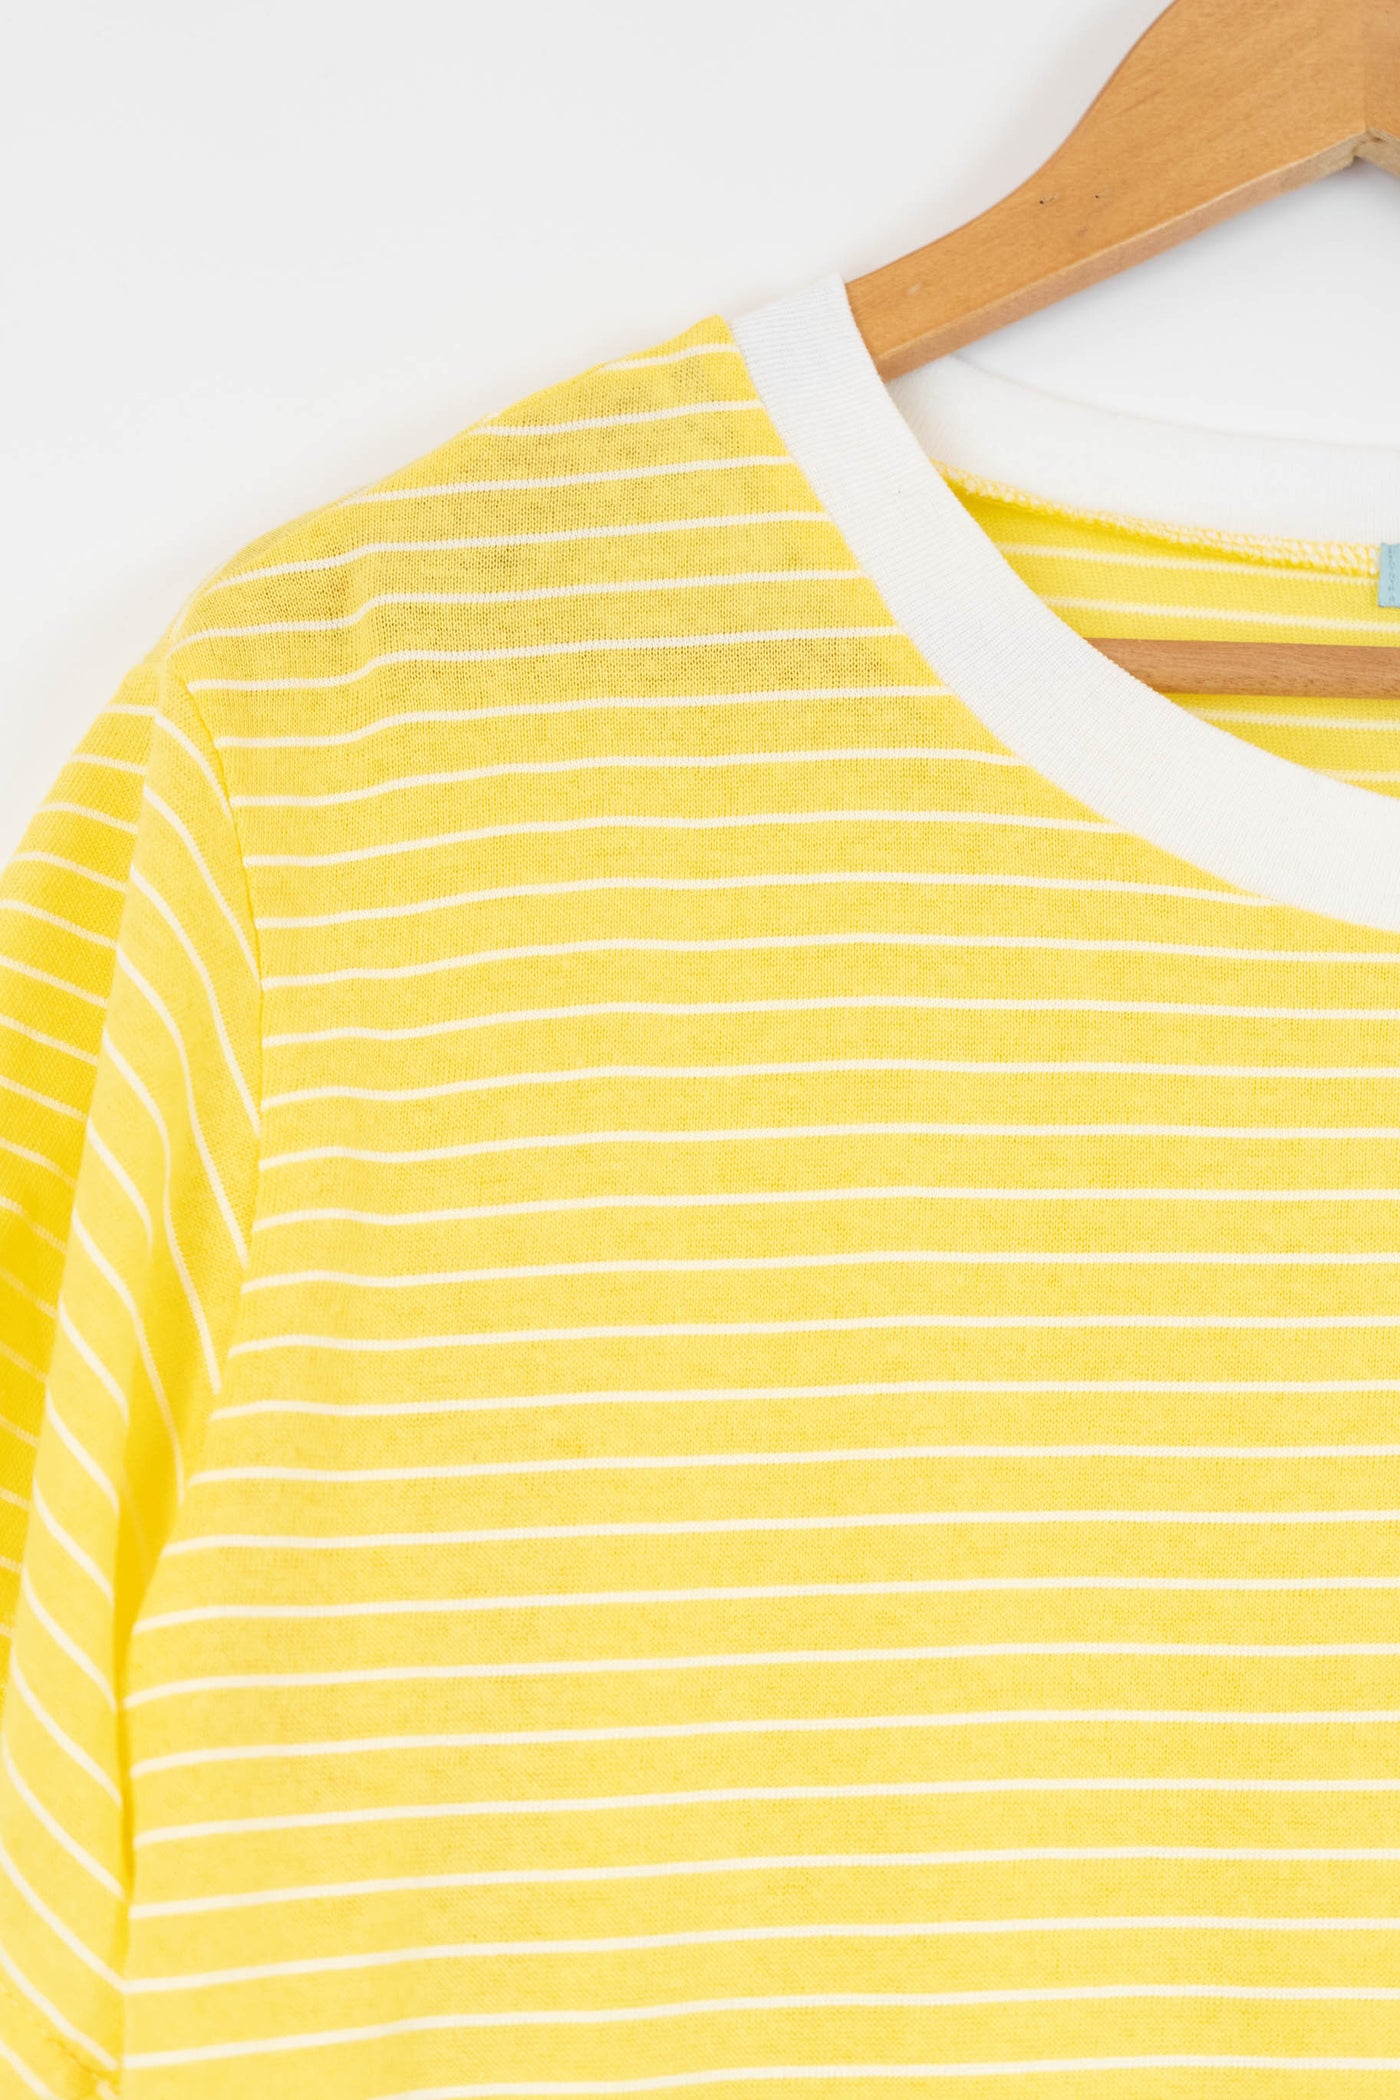 Camiseta amarilla con rayas blancas